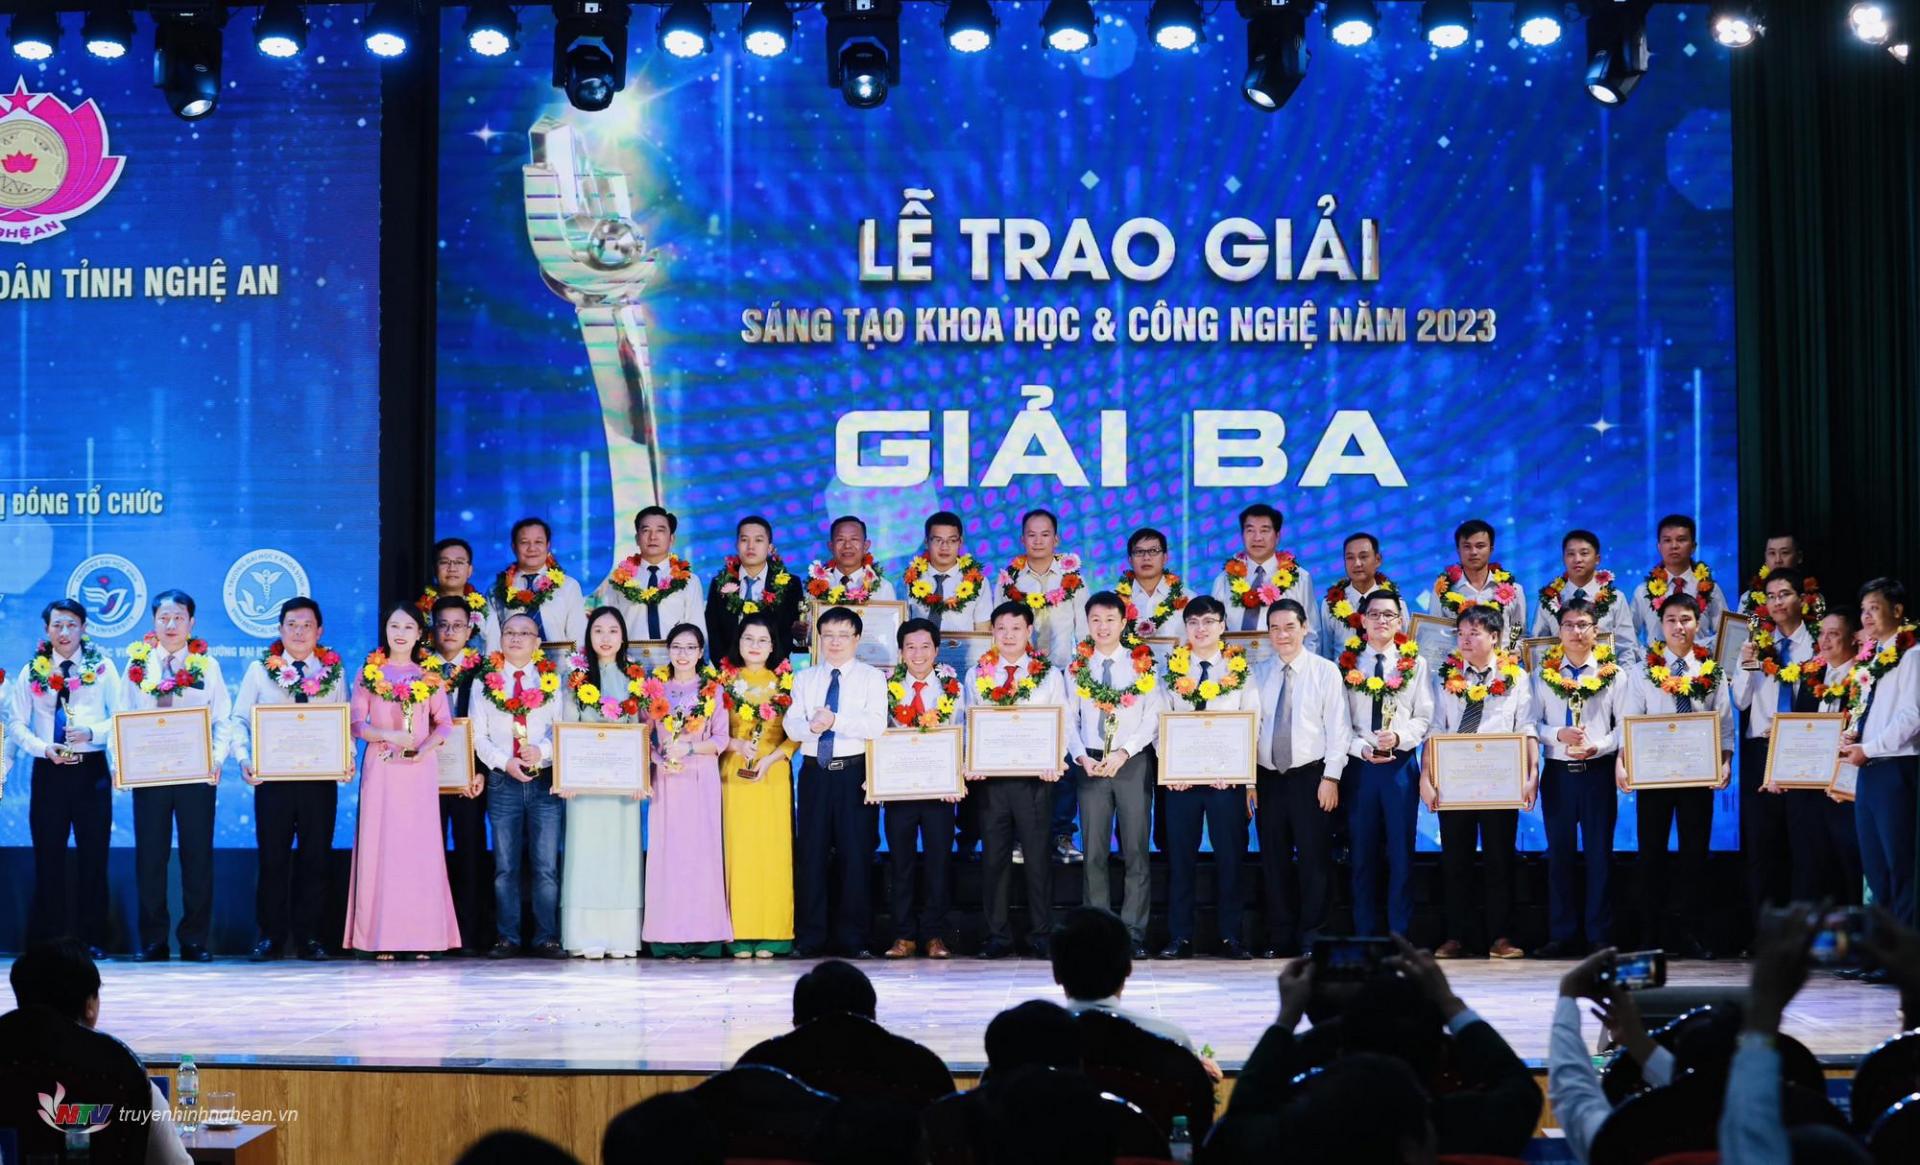 Phó Chủ tịch UBND tỉnh Bùi Đình Long và Phó Giám đốc Học viện KH&CN và ĐMST Nguyễn Ngọc Song trao thưởng cho các nhóm tác giả,  tác giả đạt giải Ba.